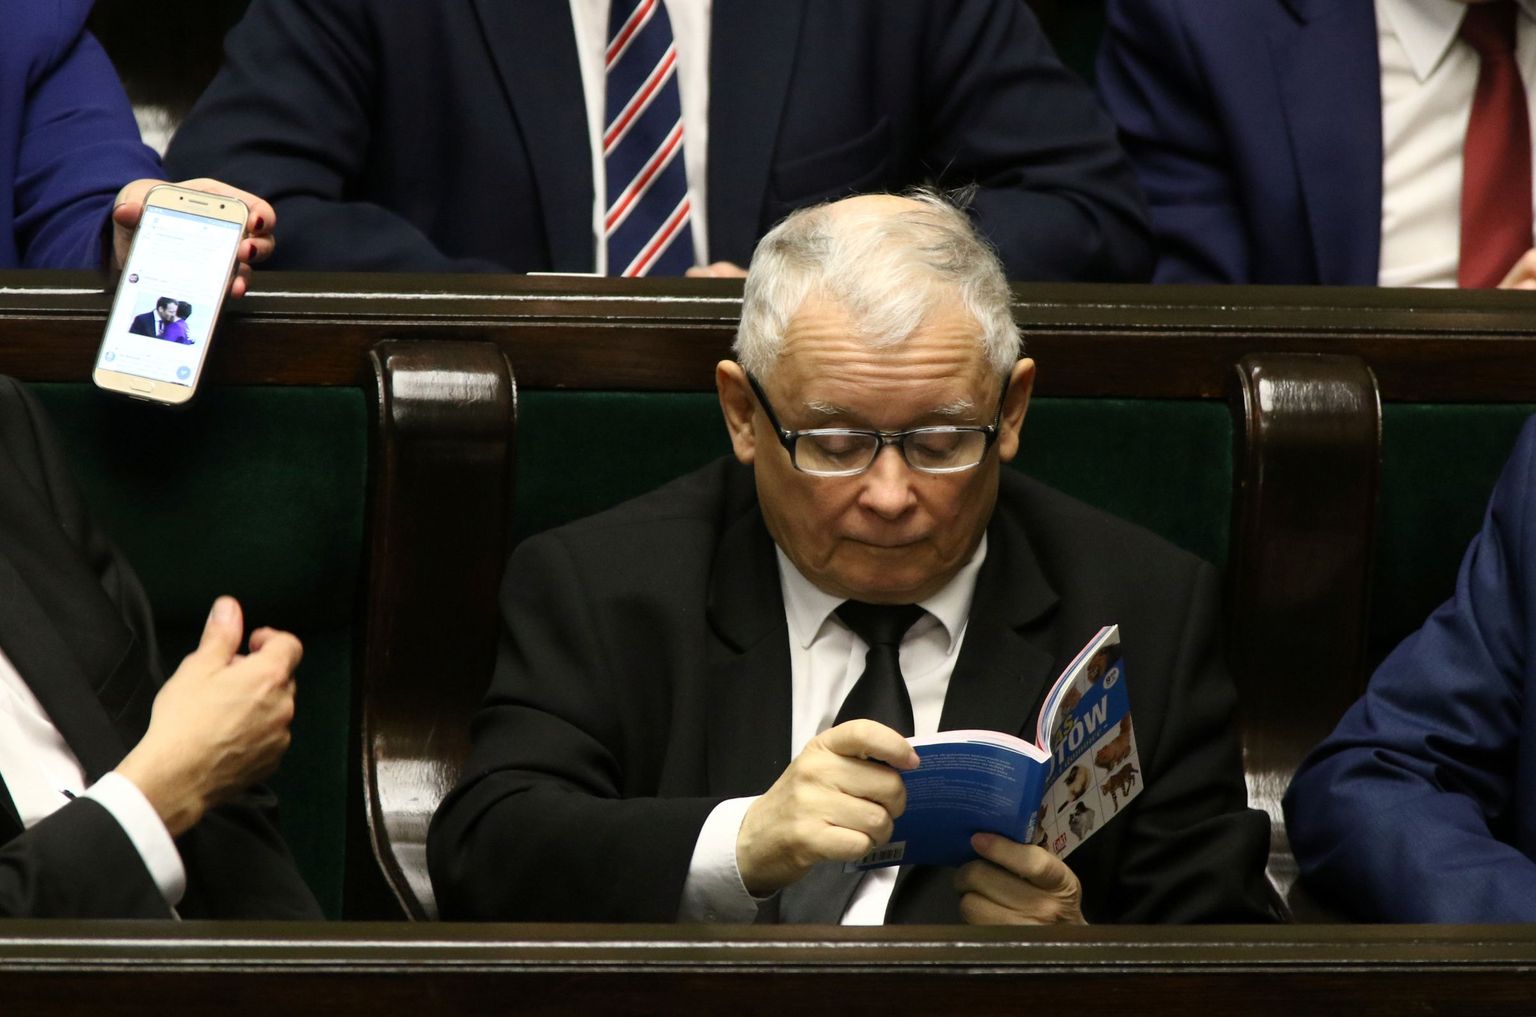 Jarosław Kaczyński lugemas läinud nädalal parlamendiistungi ajal kassiatlast.